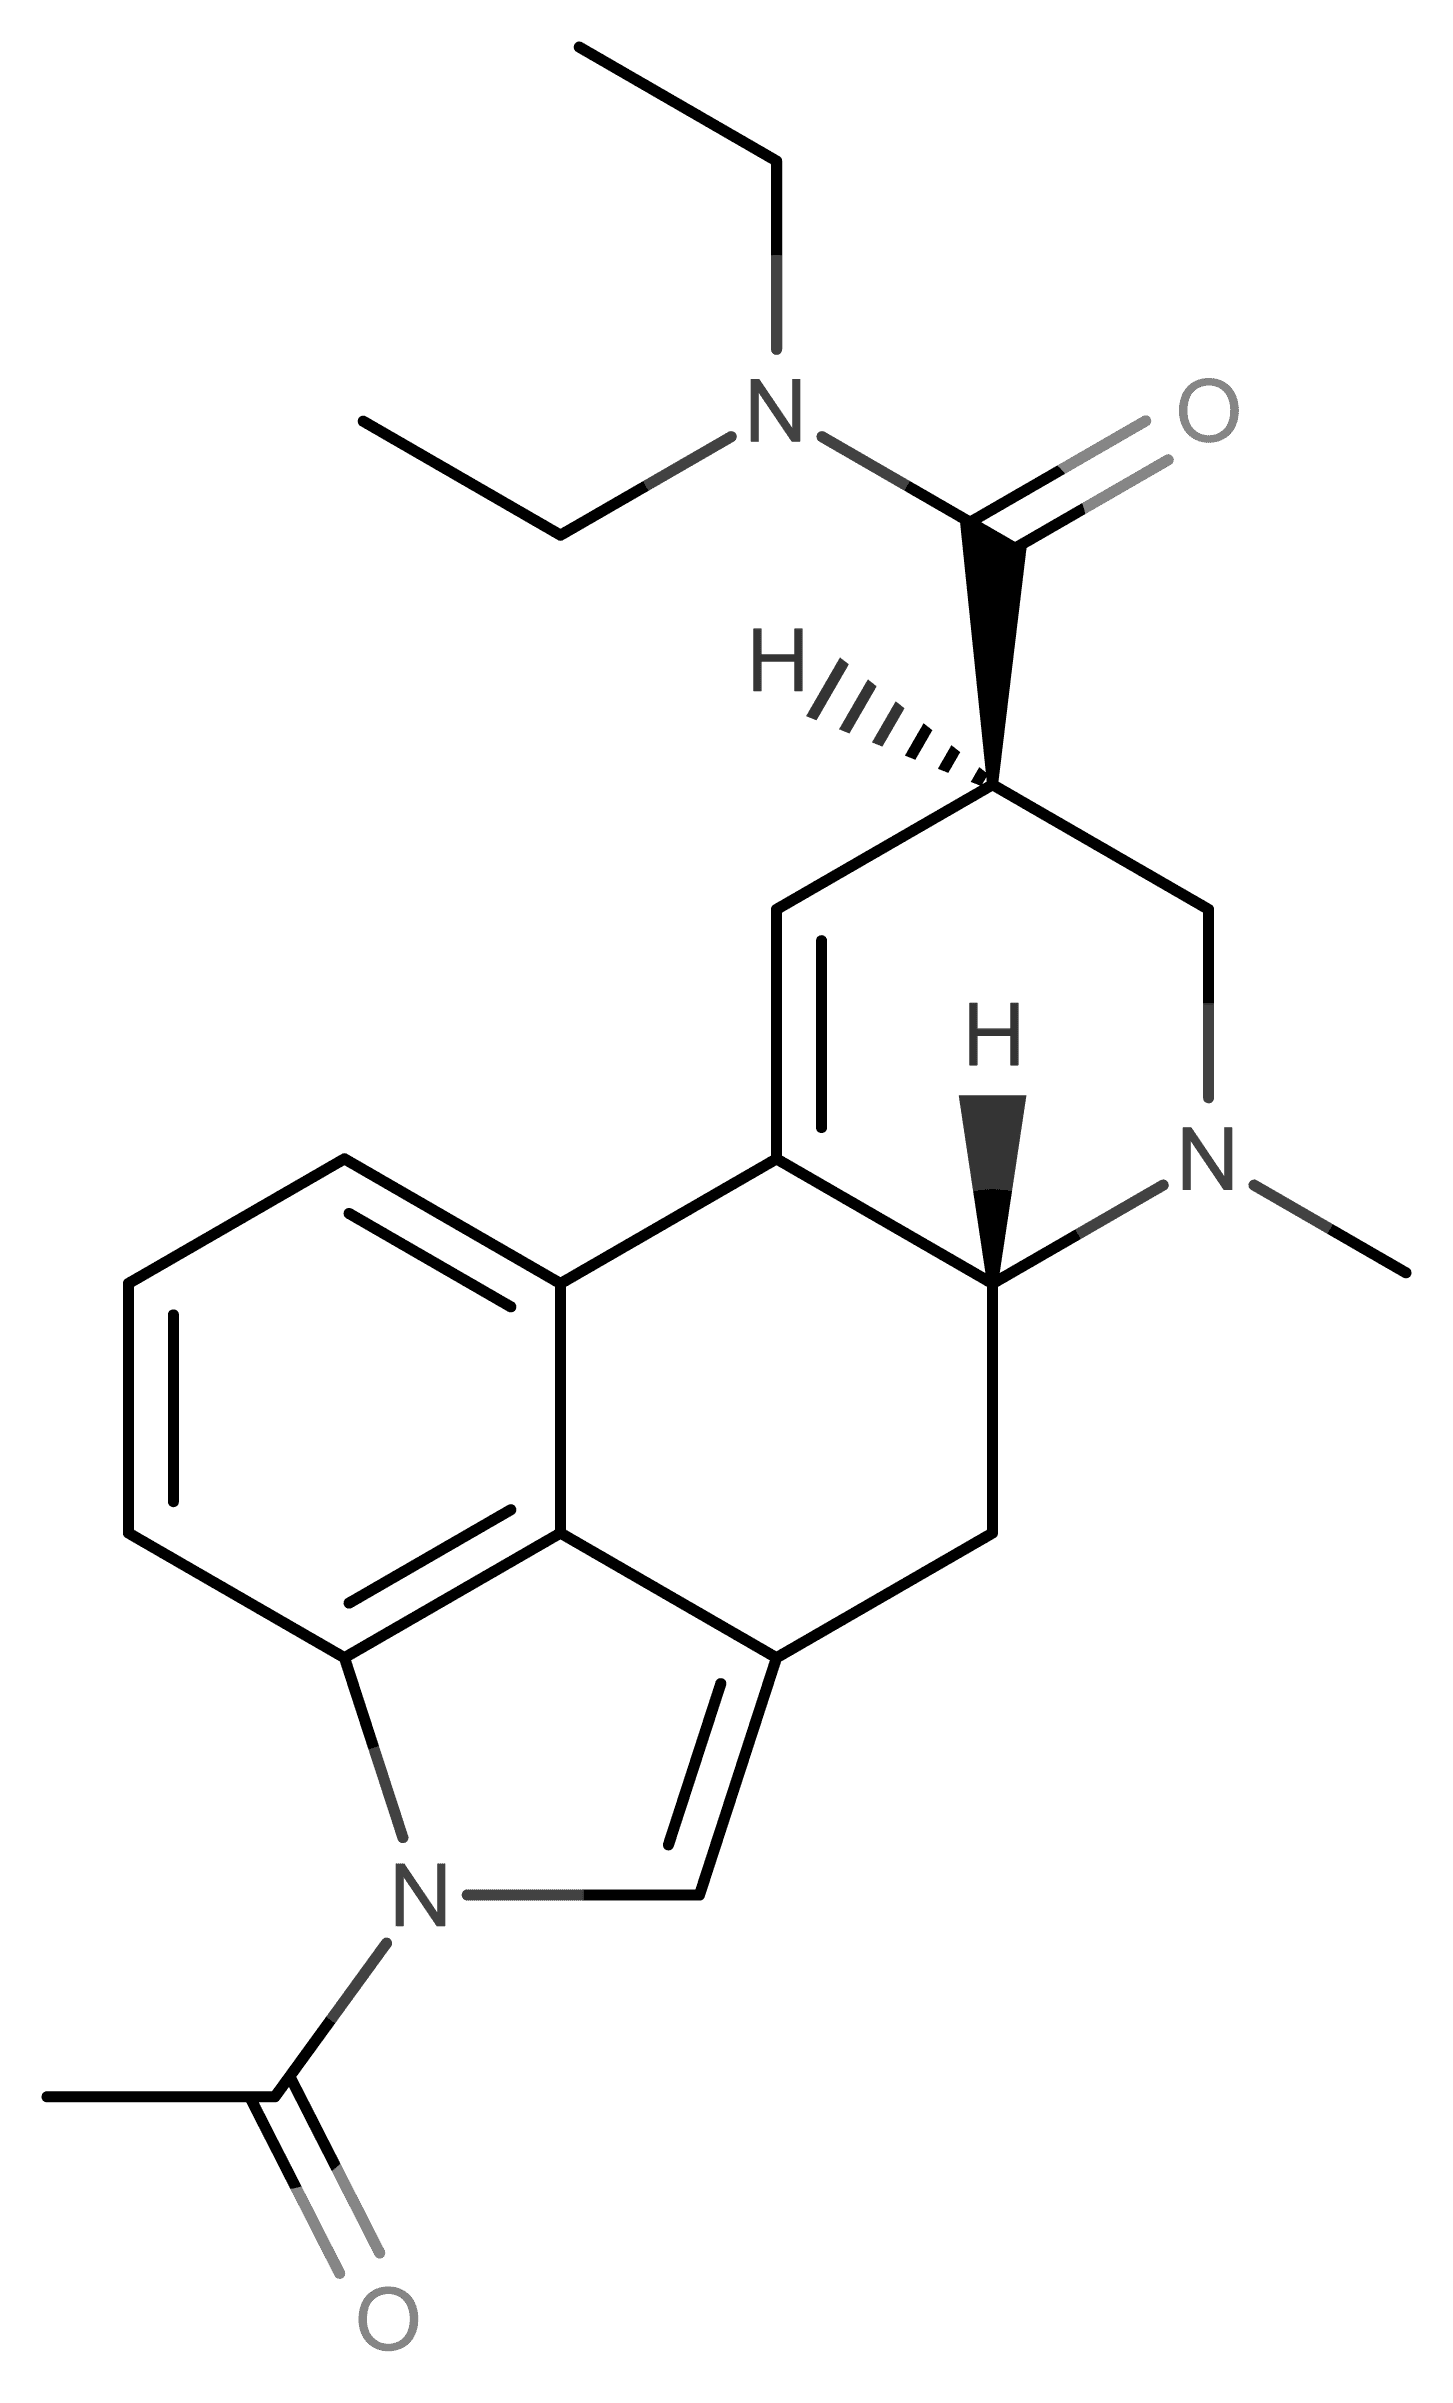 ALD-52 molecular scheme